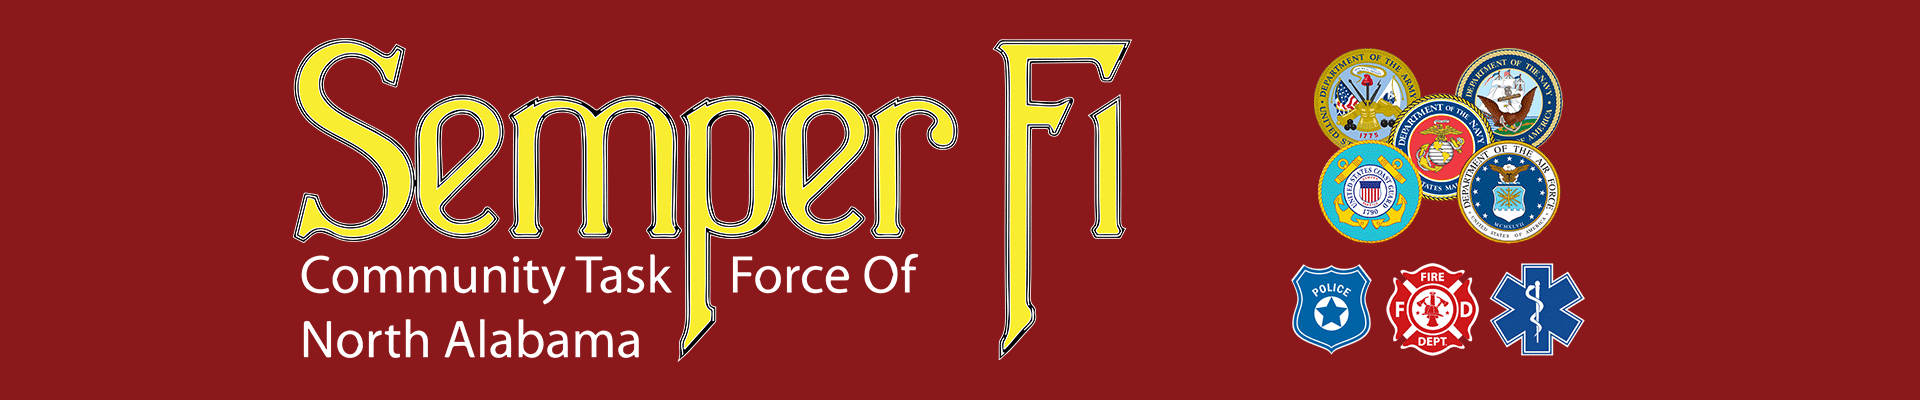 Semper-Fi-Community-Task-Force-Main-Banner-400pxhigh